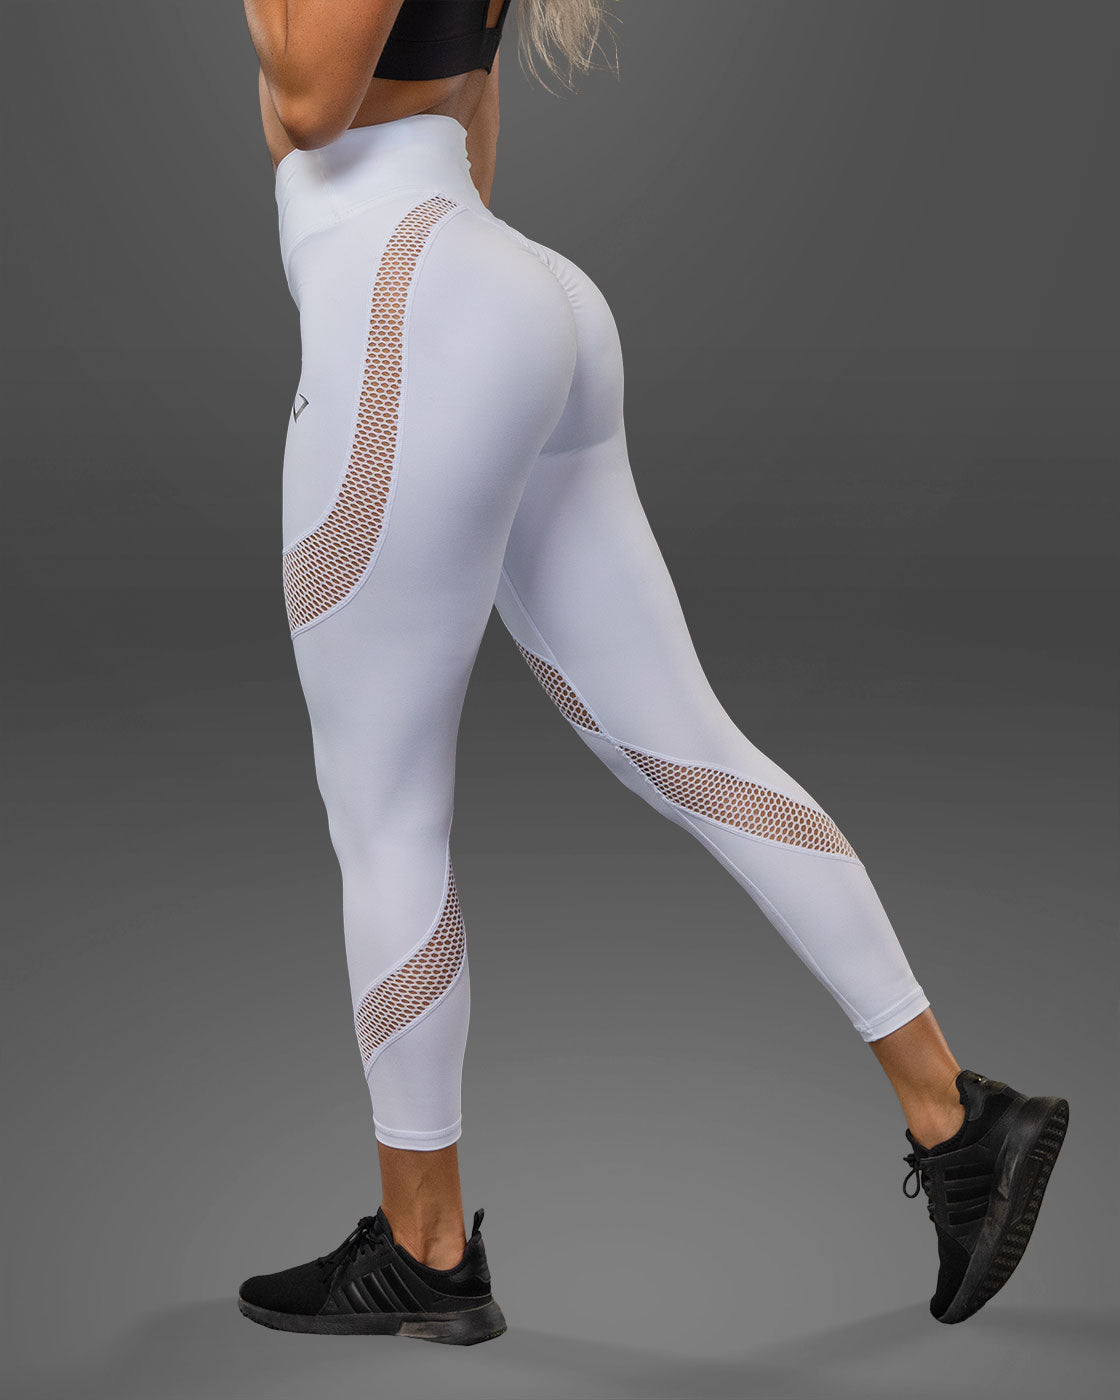 Cute Mesh Cutout Workout Leggings Mesh leggings, leggings with